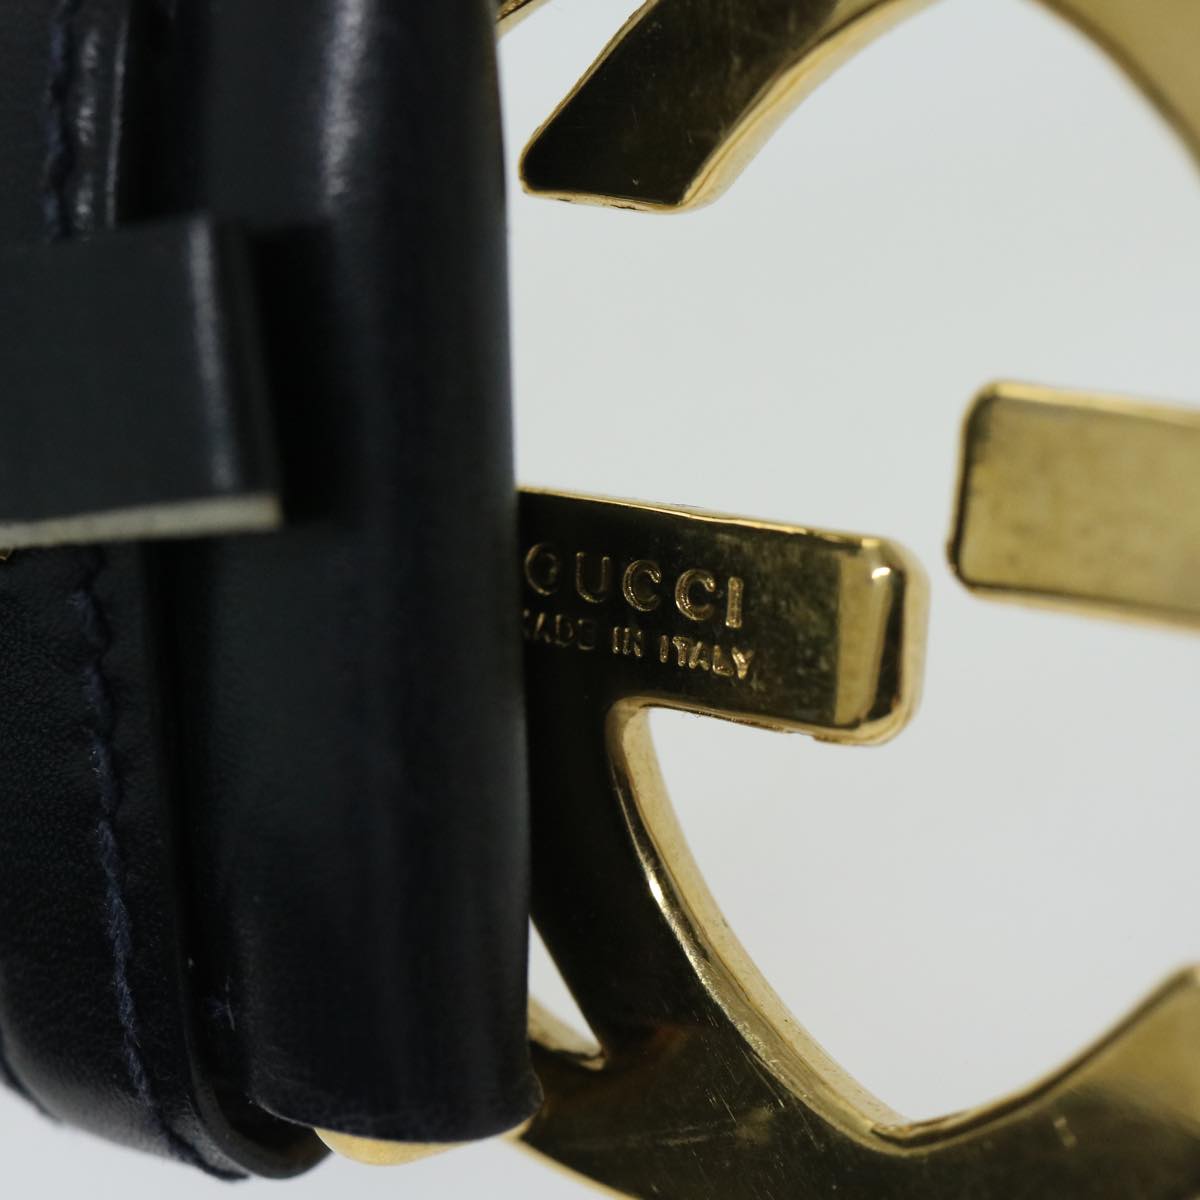 GUCCI Interlocking Belt Leather 31.5"" Navy 037 01 33 1510 Auth yk10850